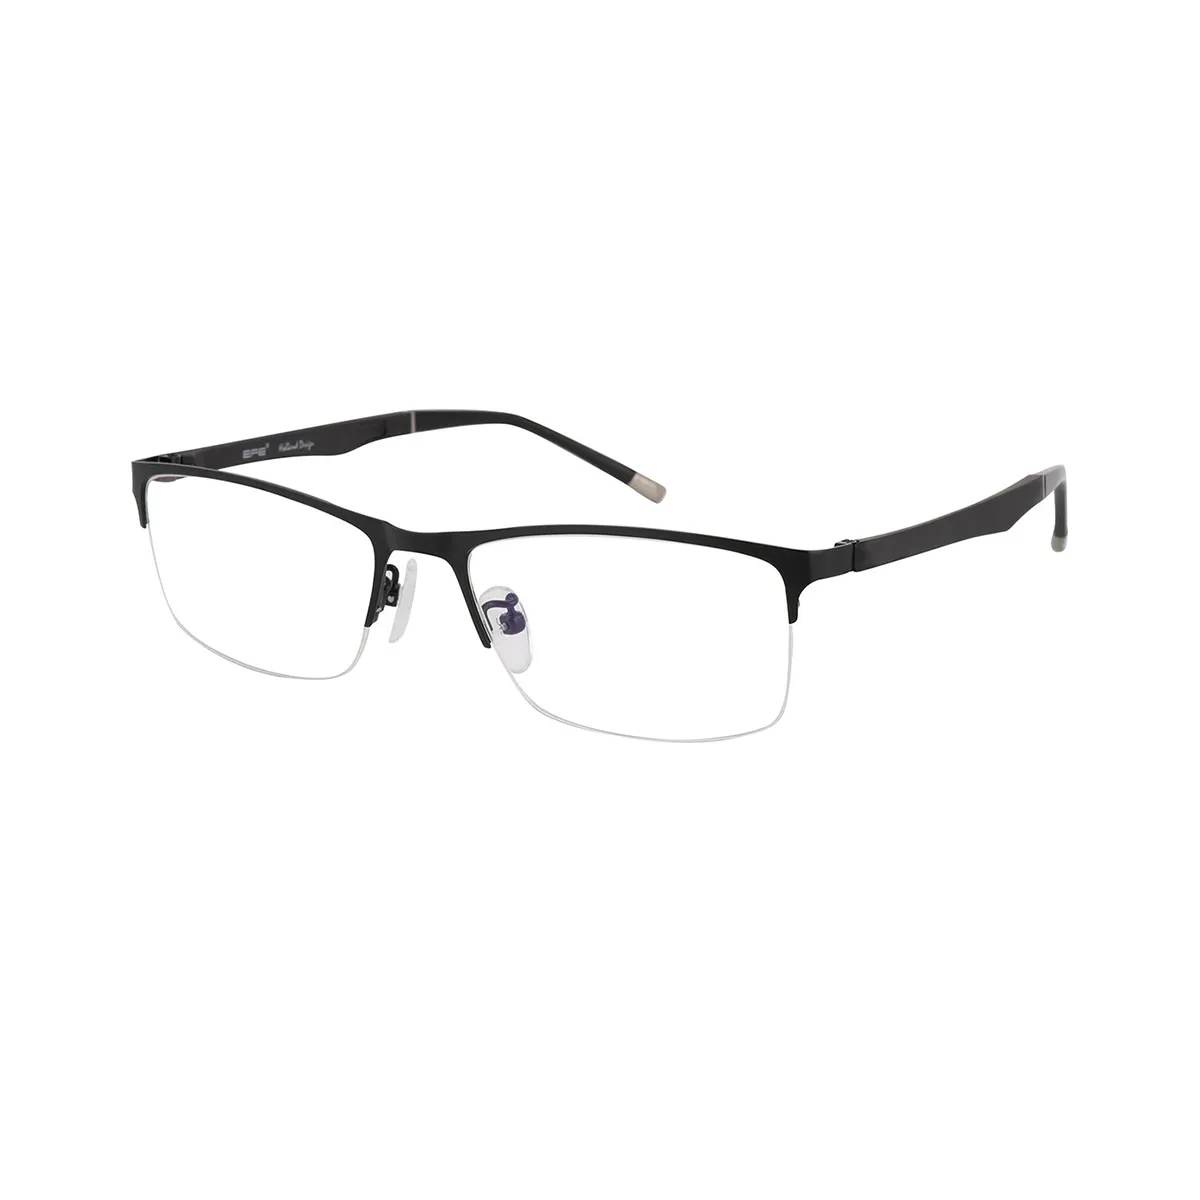 Stratton - Browline Black Glasses for Men